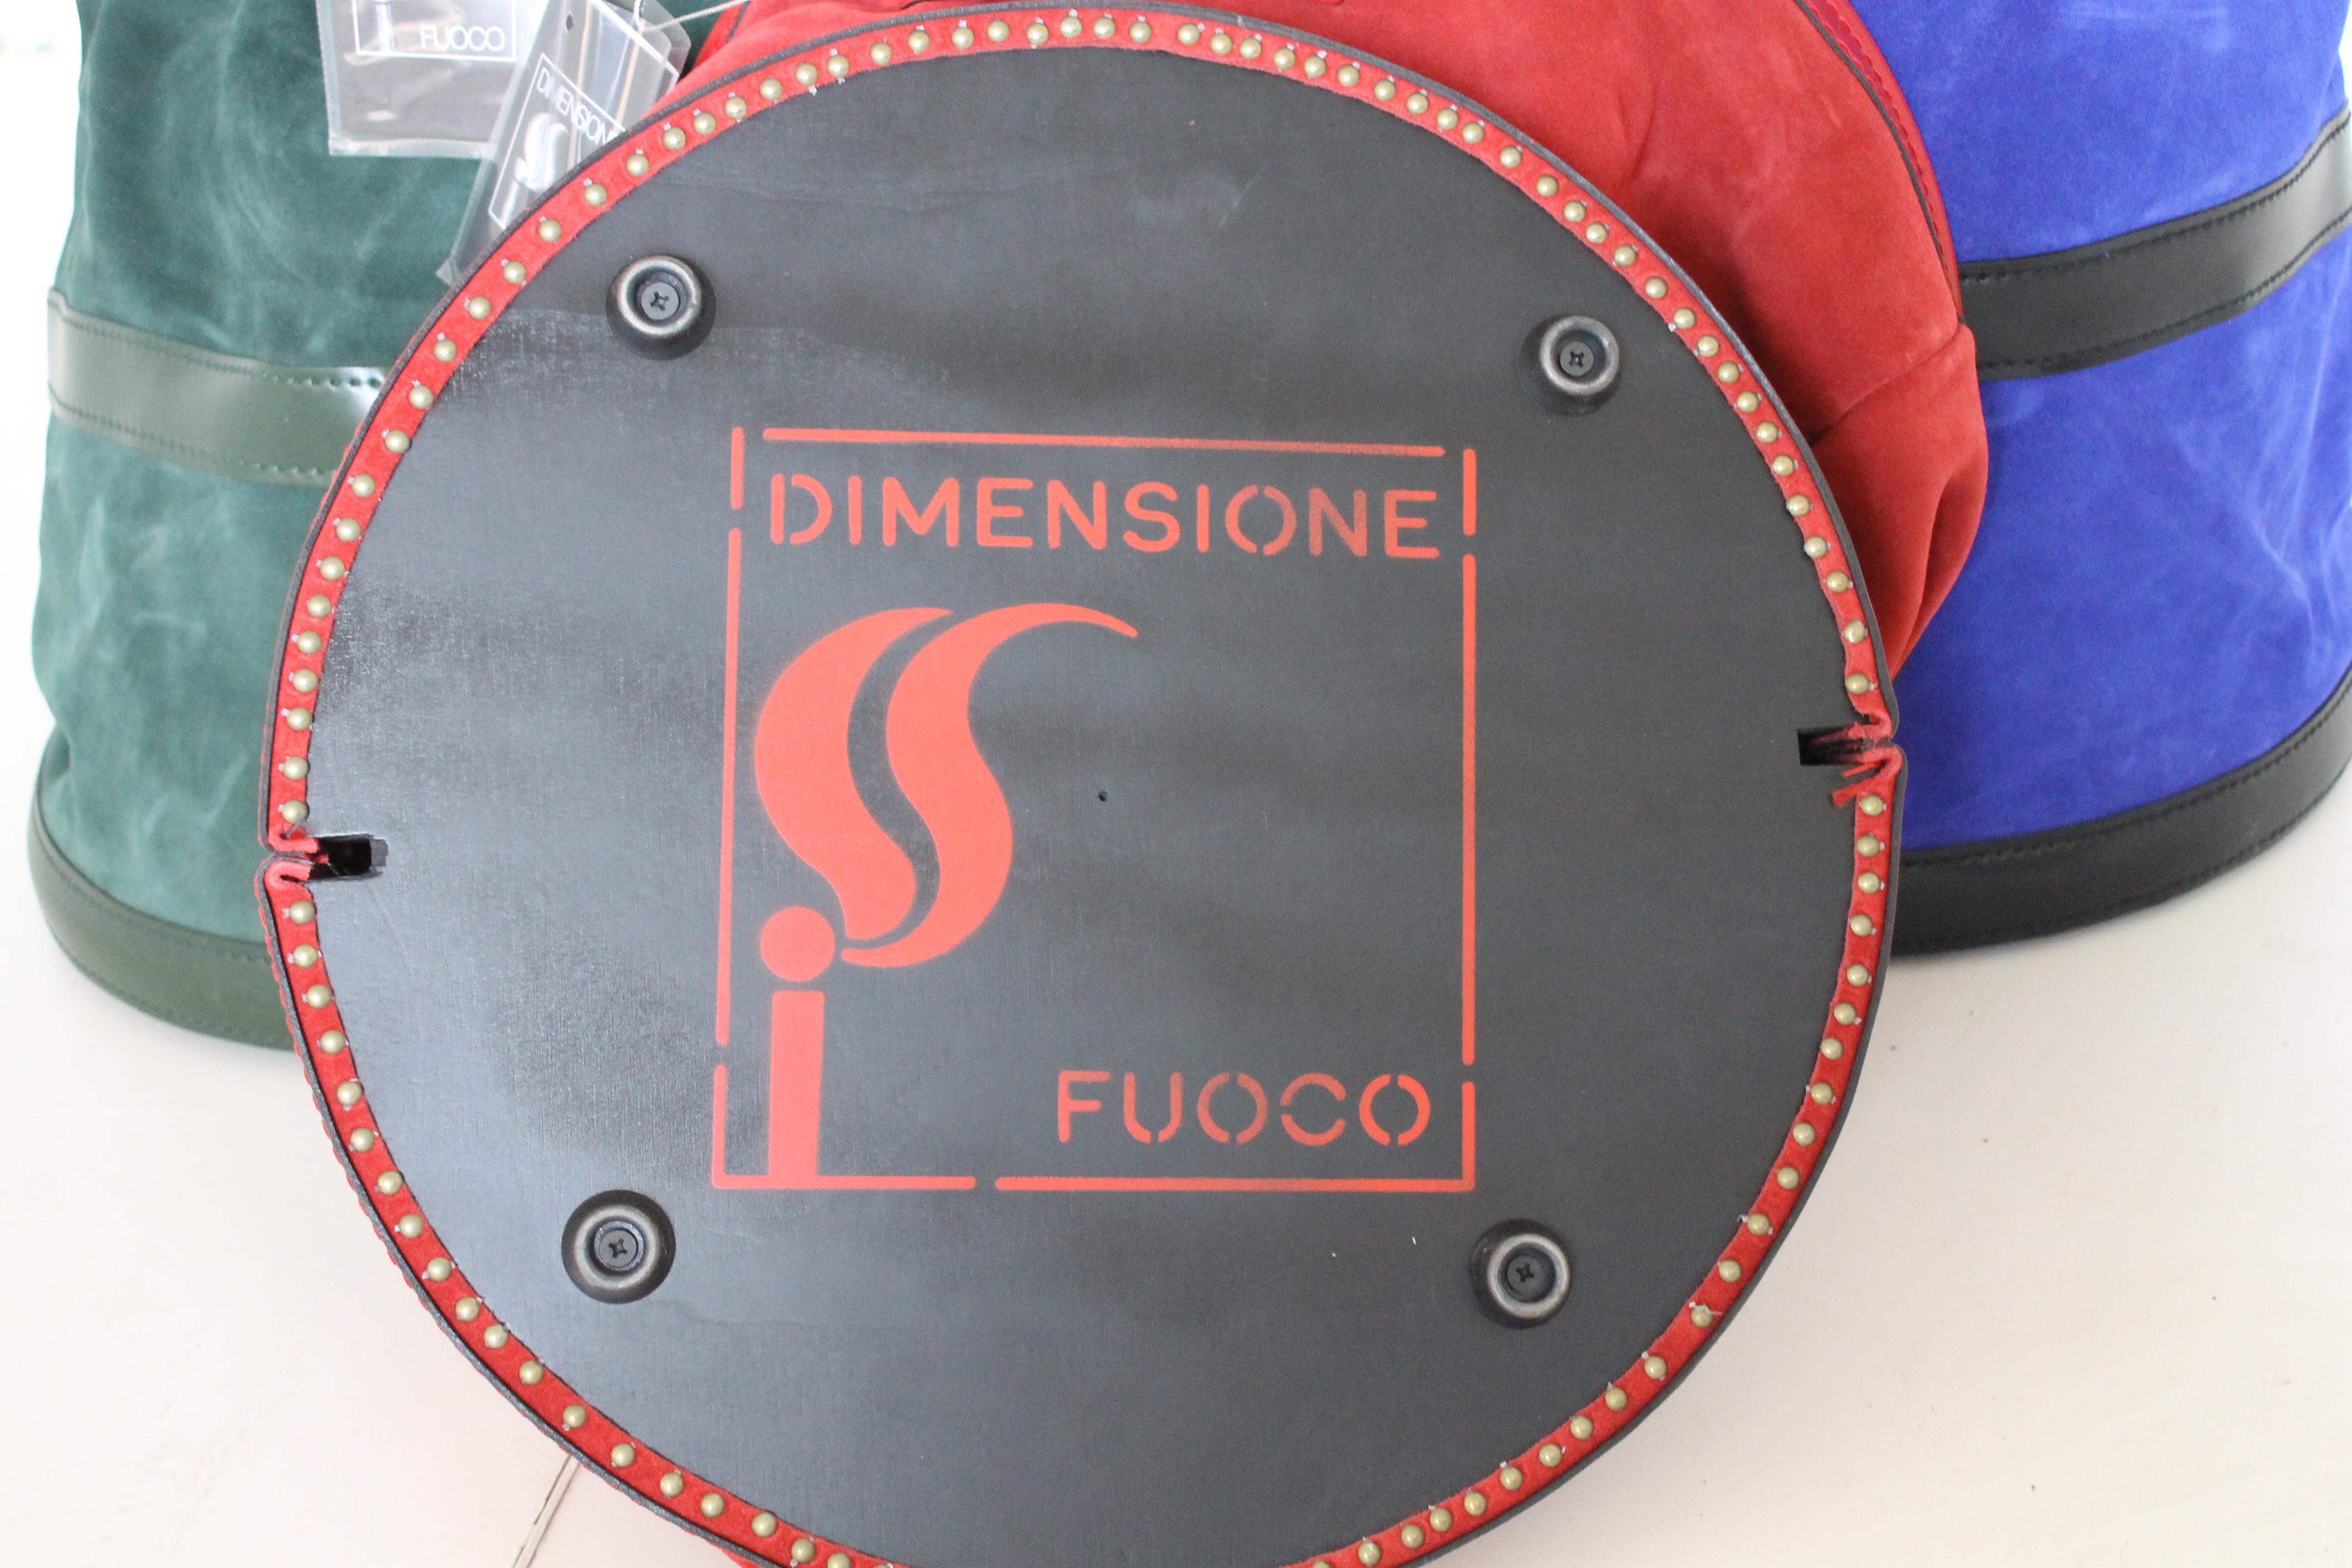 Dimensione Fuoco porte-bois en cuir conçu par Tobia Scarpa, Italie, 2005.

Ces chefs-d'œuvre minimalistes, qui allient tradition, fonctionnalité et artisanat brillant, sont indispensables à toute cheminée.

Cuir rouge, vert et bleu de première